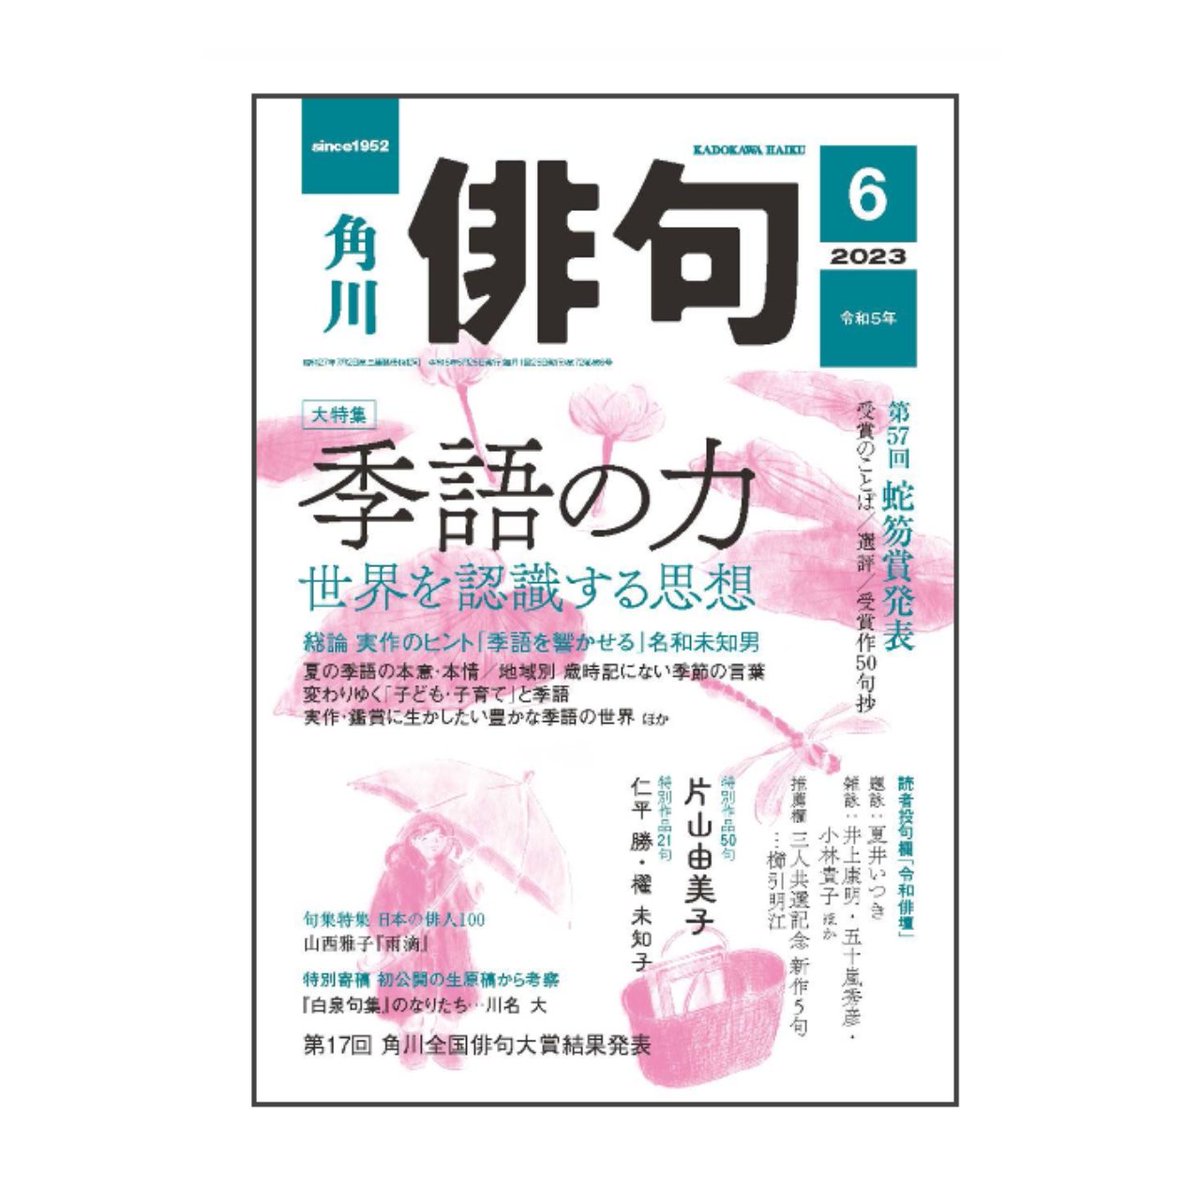 角川「俳句」6月号発売中。#田島ハルの妄想俳画 第35回目載ってます。今回は髙田正子さまの句から俳画とエッセイを書きました。俳人スポットライトでは土井探花さんの句が掲載されてますよ。 #俳句 #俳画